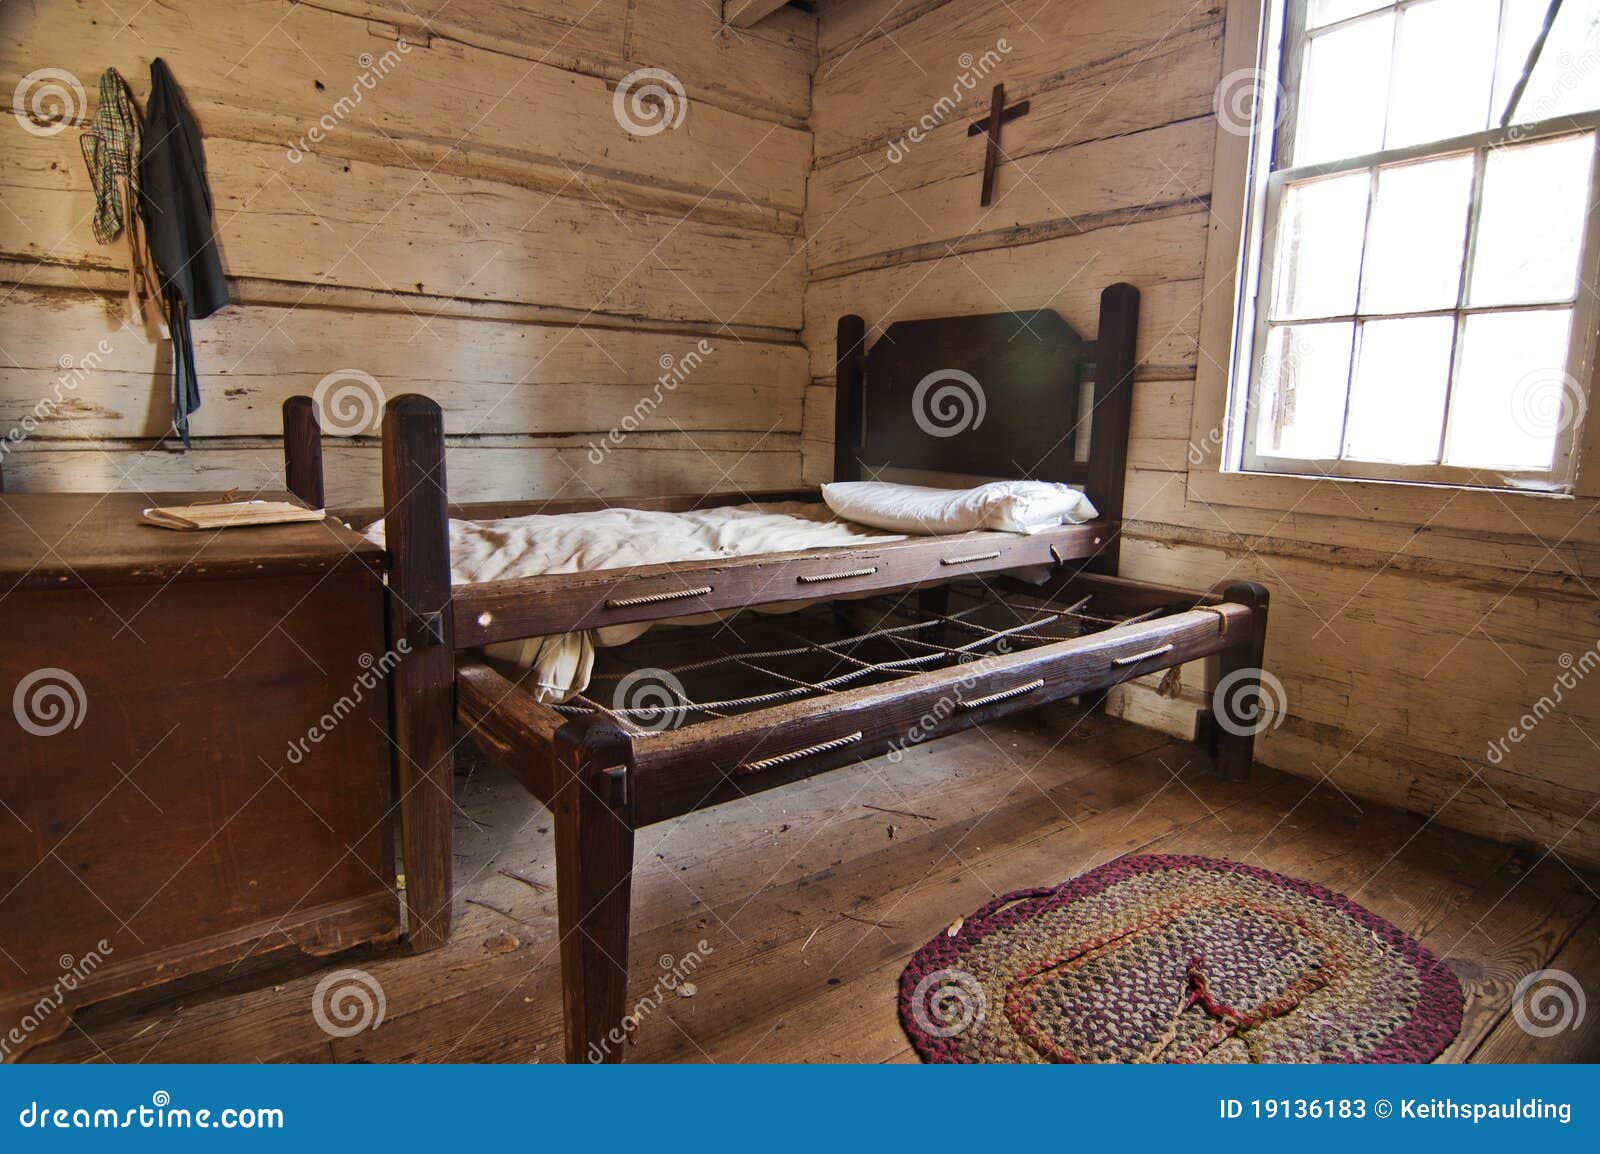 pioneer bed